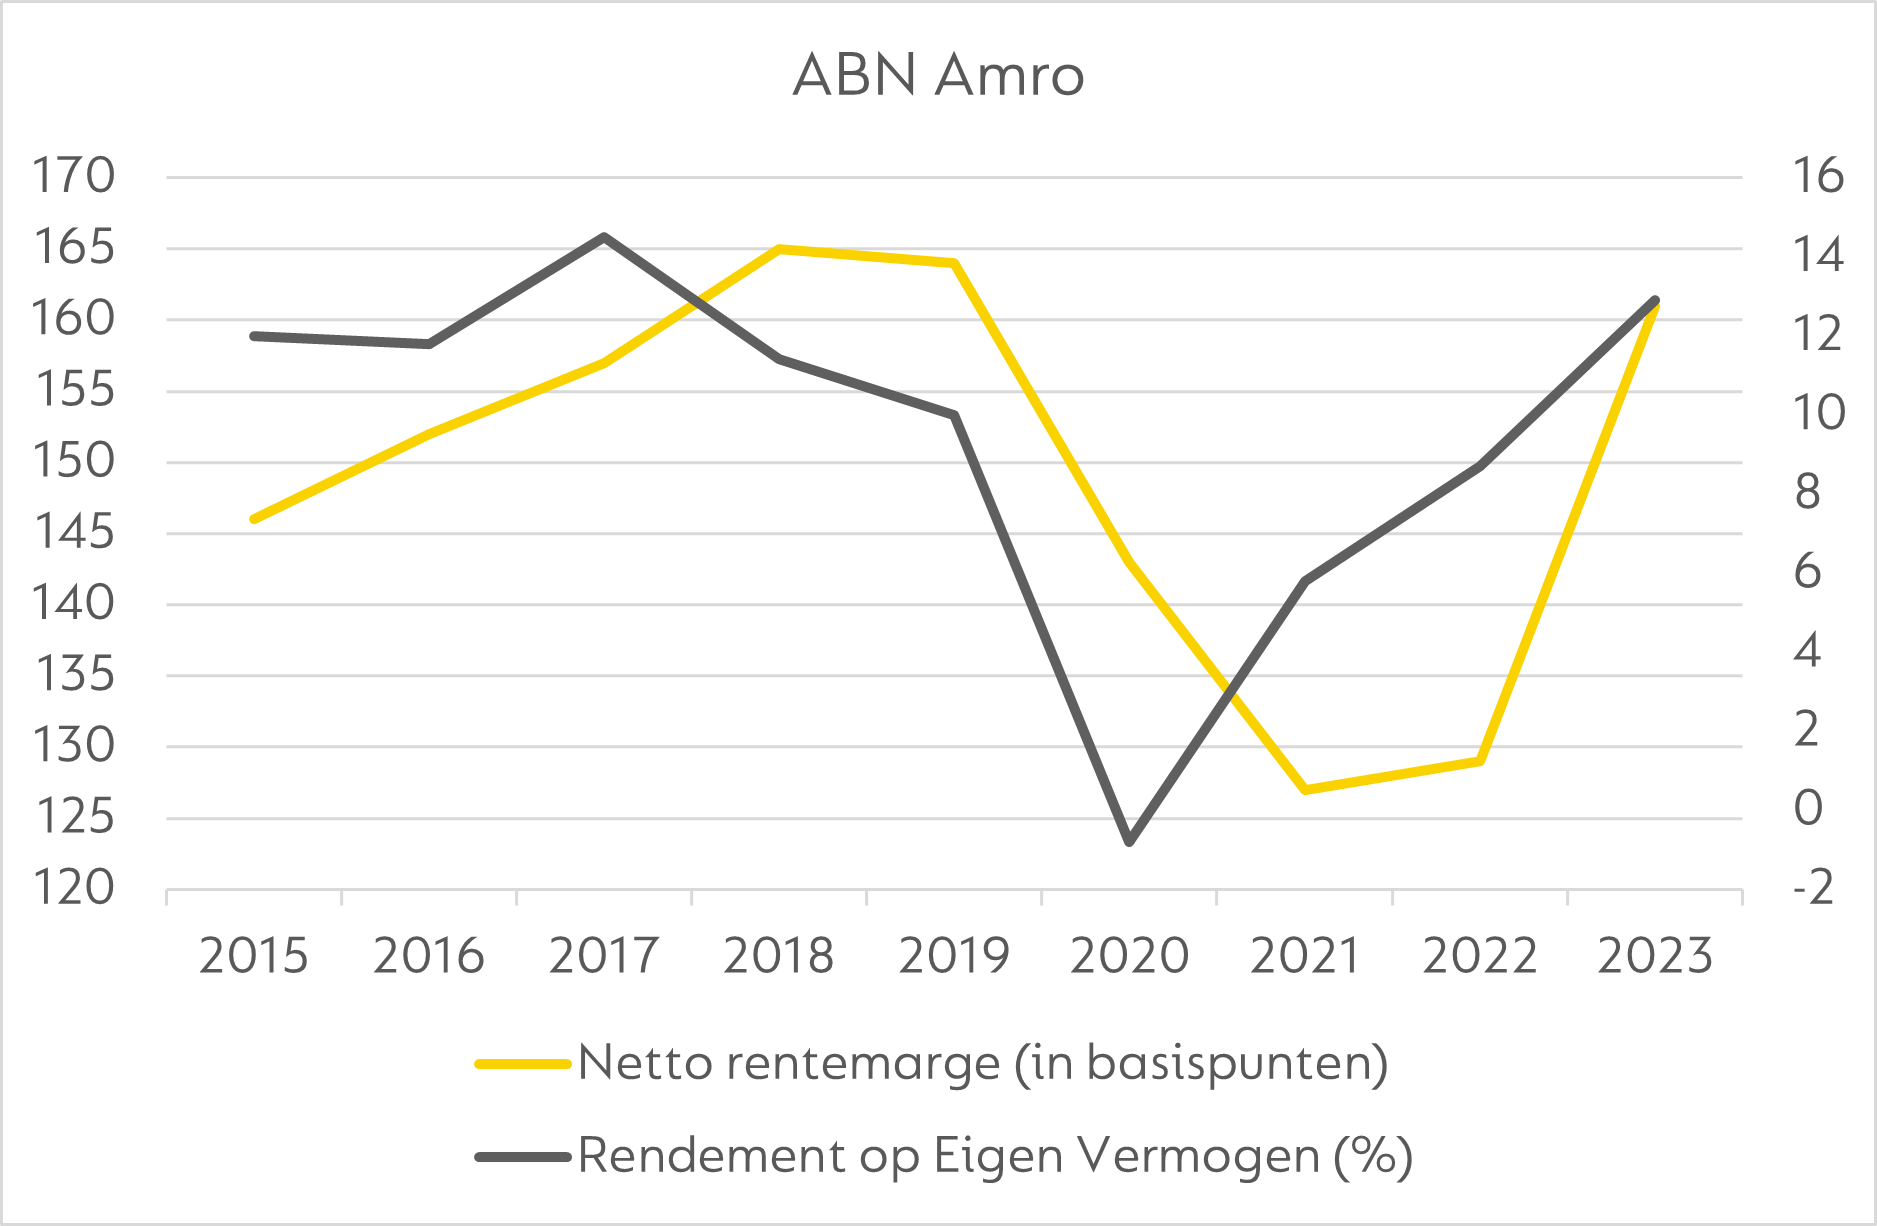 In 2020 maakte ABN AMRO zelfs verlies. Dat kwam niet alleen door de dalende rentemarge, maar ook door de recessie dat jaar en de daarmee samenhangende kredietverliezen en voorzieningen, al vielen de kredietverliezen achteraf mee en waren er te grote voorzieningen getroffen.